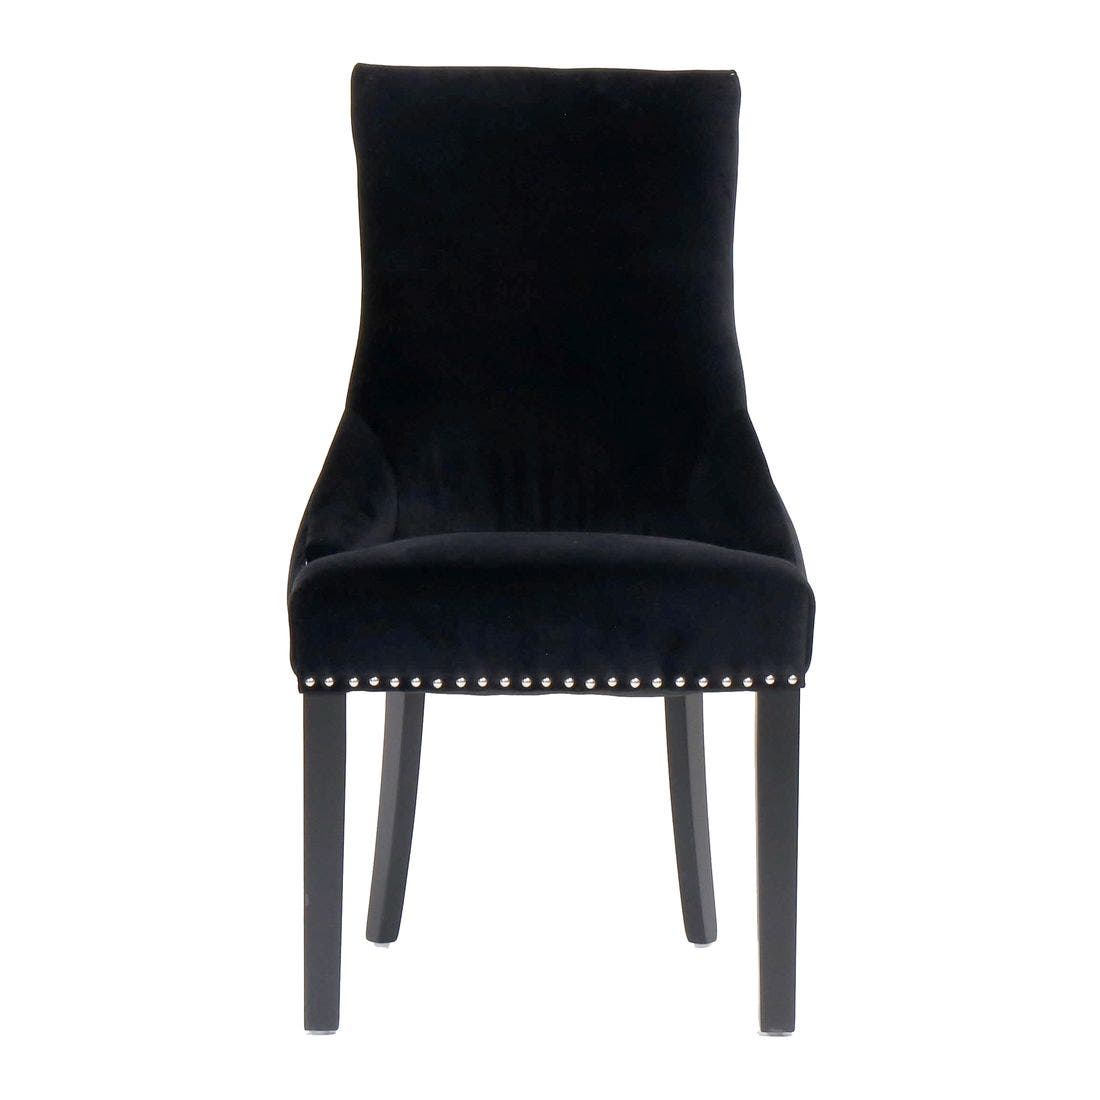 เก้าอี้ทานอาหาร เก้าอี้ไม้เบาะผ้า รุ่น Bingสีดำ-SB Design Square